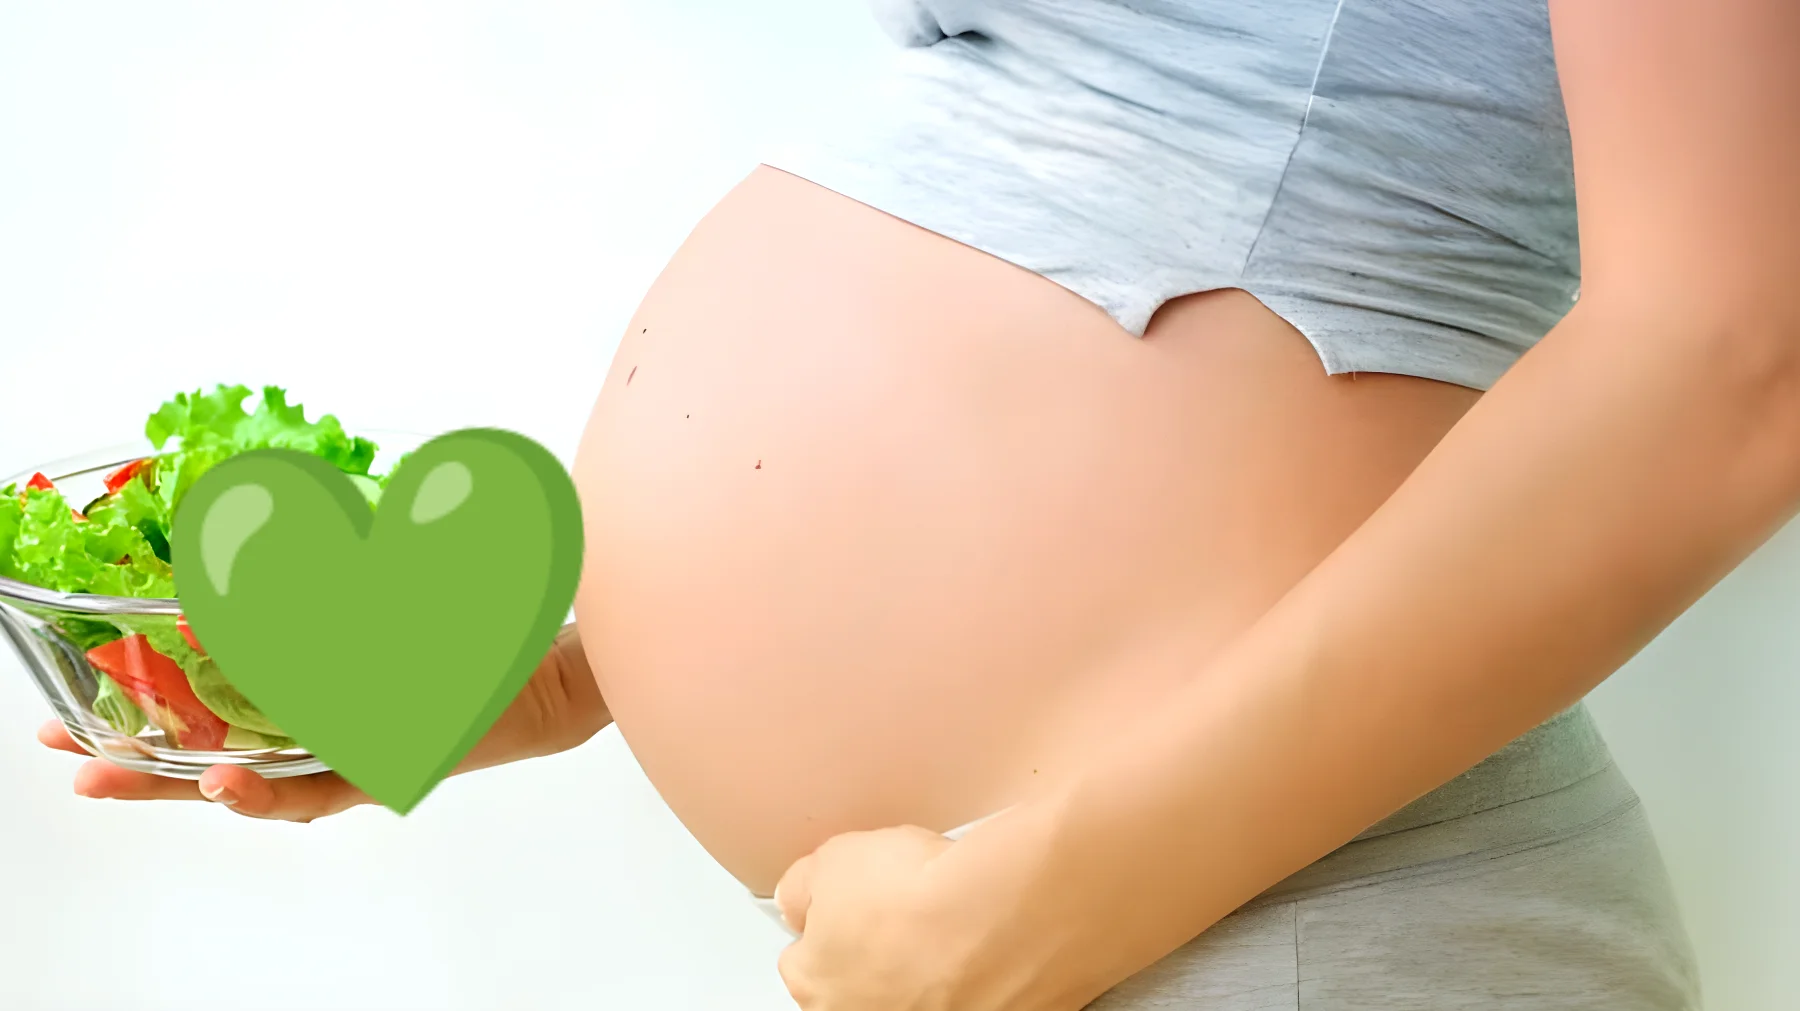 Future mamme, le verdure possono nascondere un segreto in gravidanza: ecco cosa dovresti sapere!